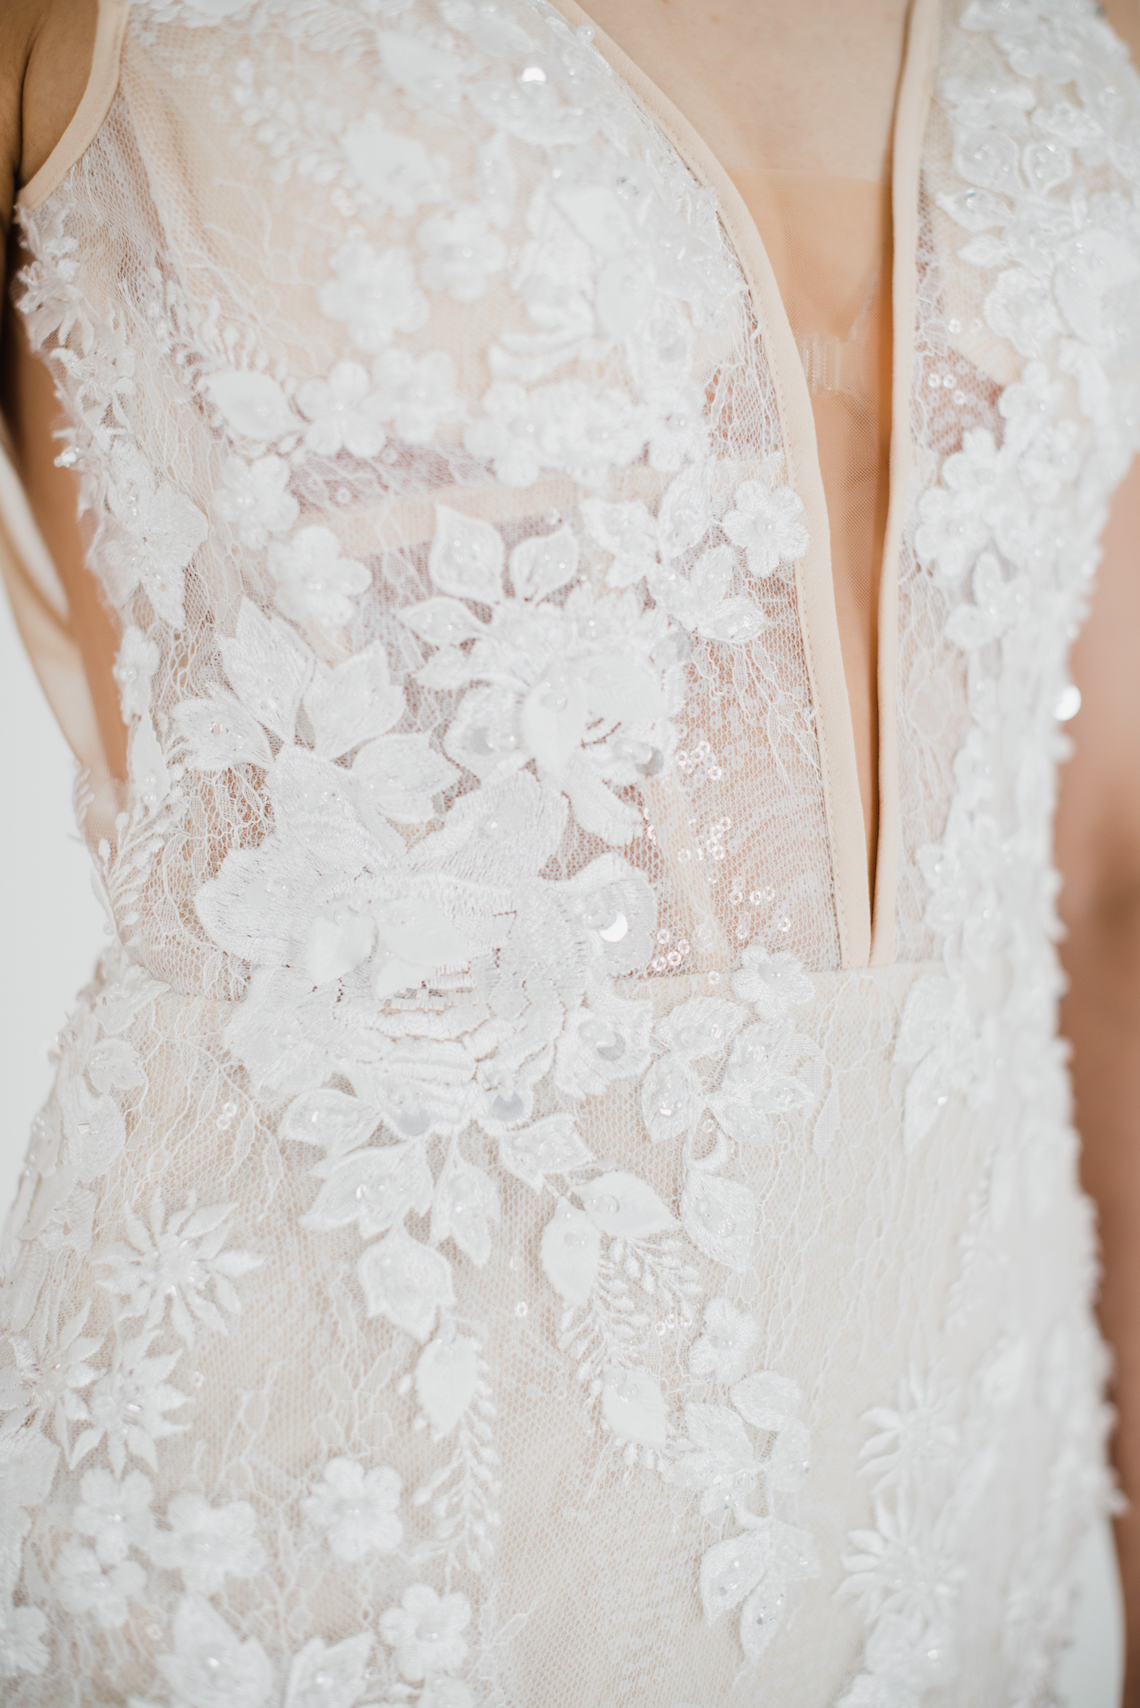 Lyra Vega vestidos de novia a medida en línea hasta 1200 - Reflexiones nupciales 22